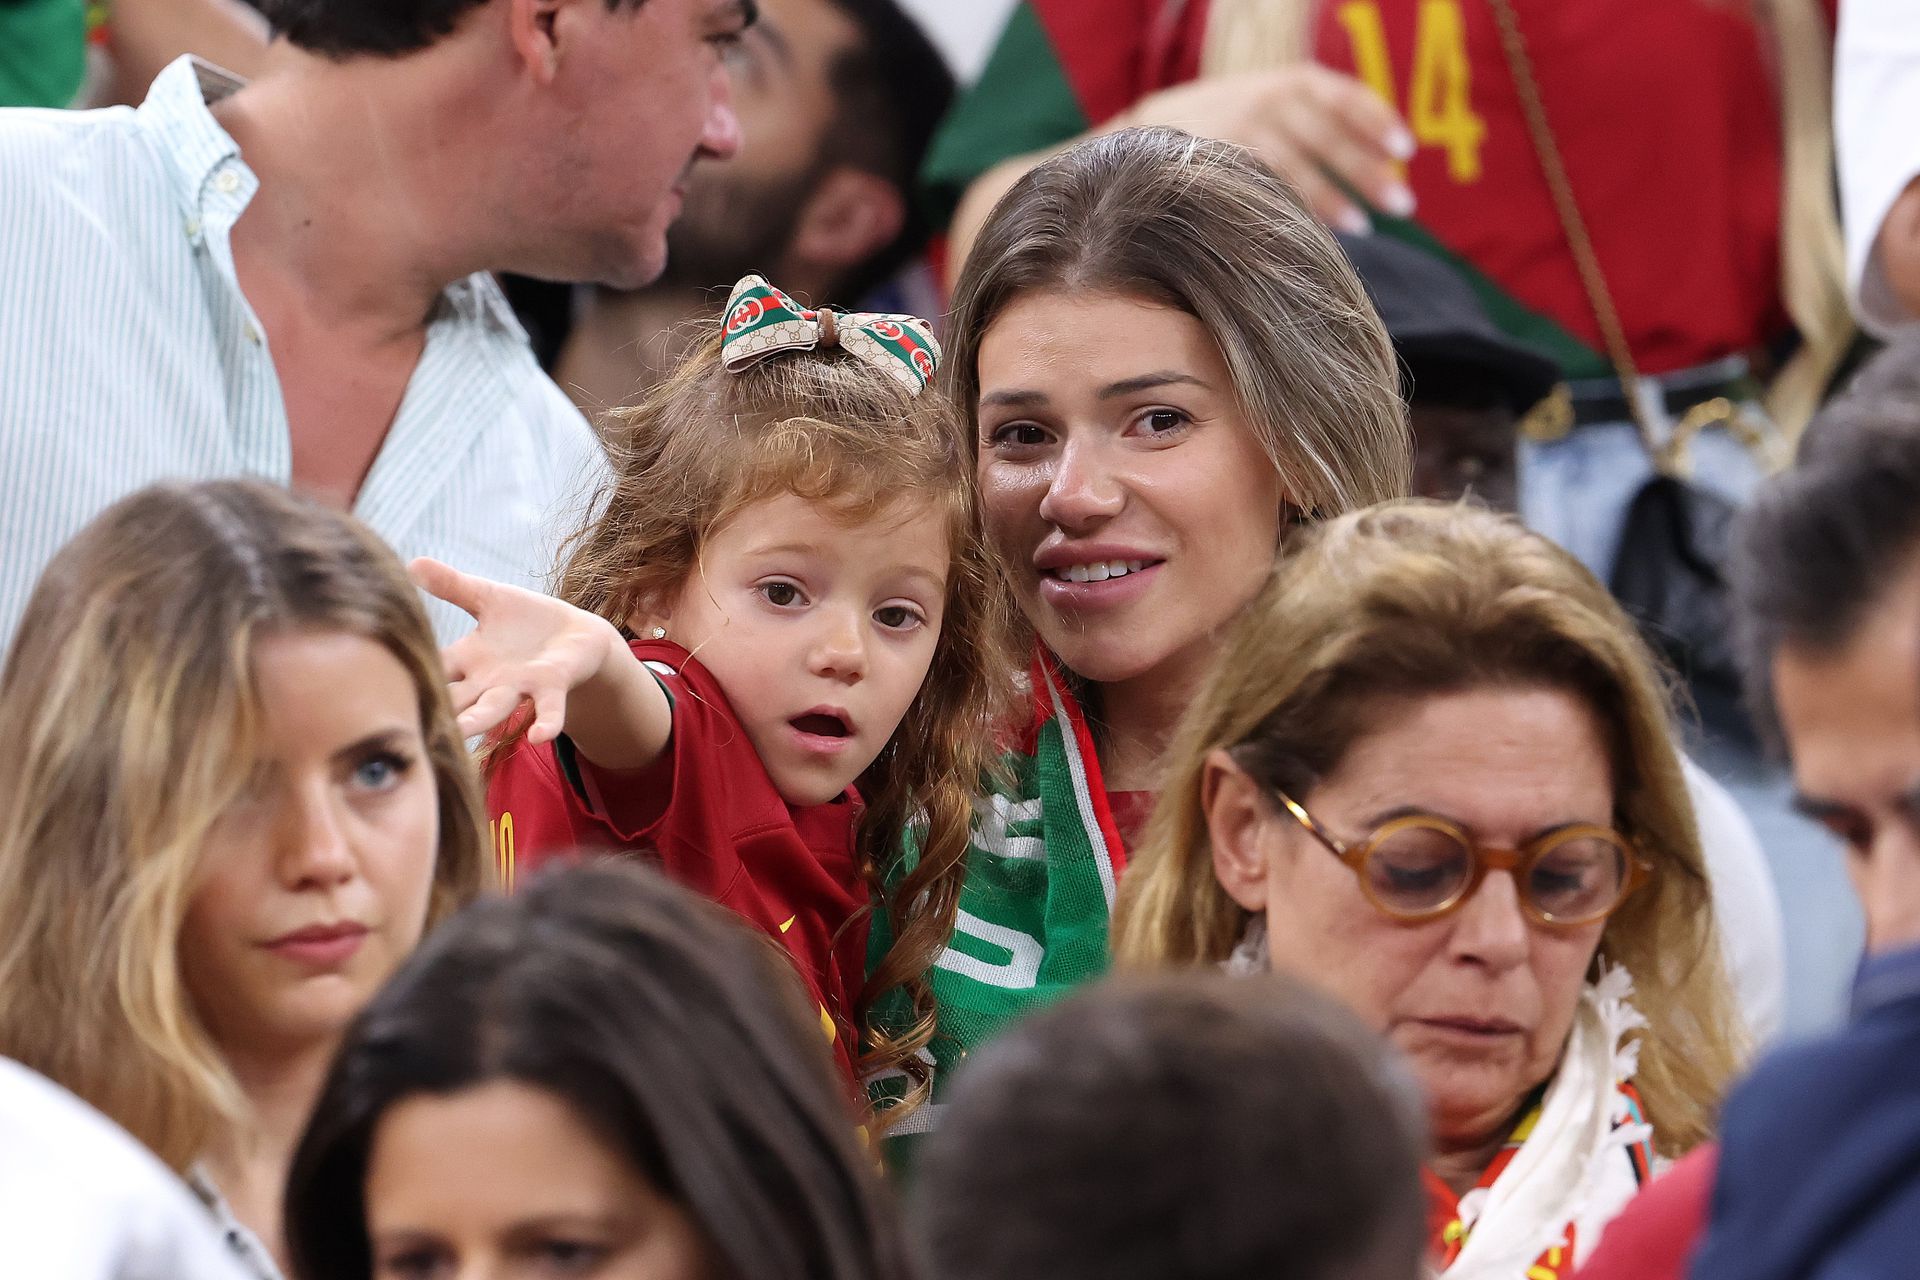 Otávio felesége a gyerekekkel izgul Portugália sikeréért / Fotó: Getty Images